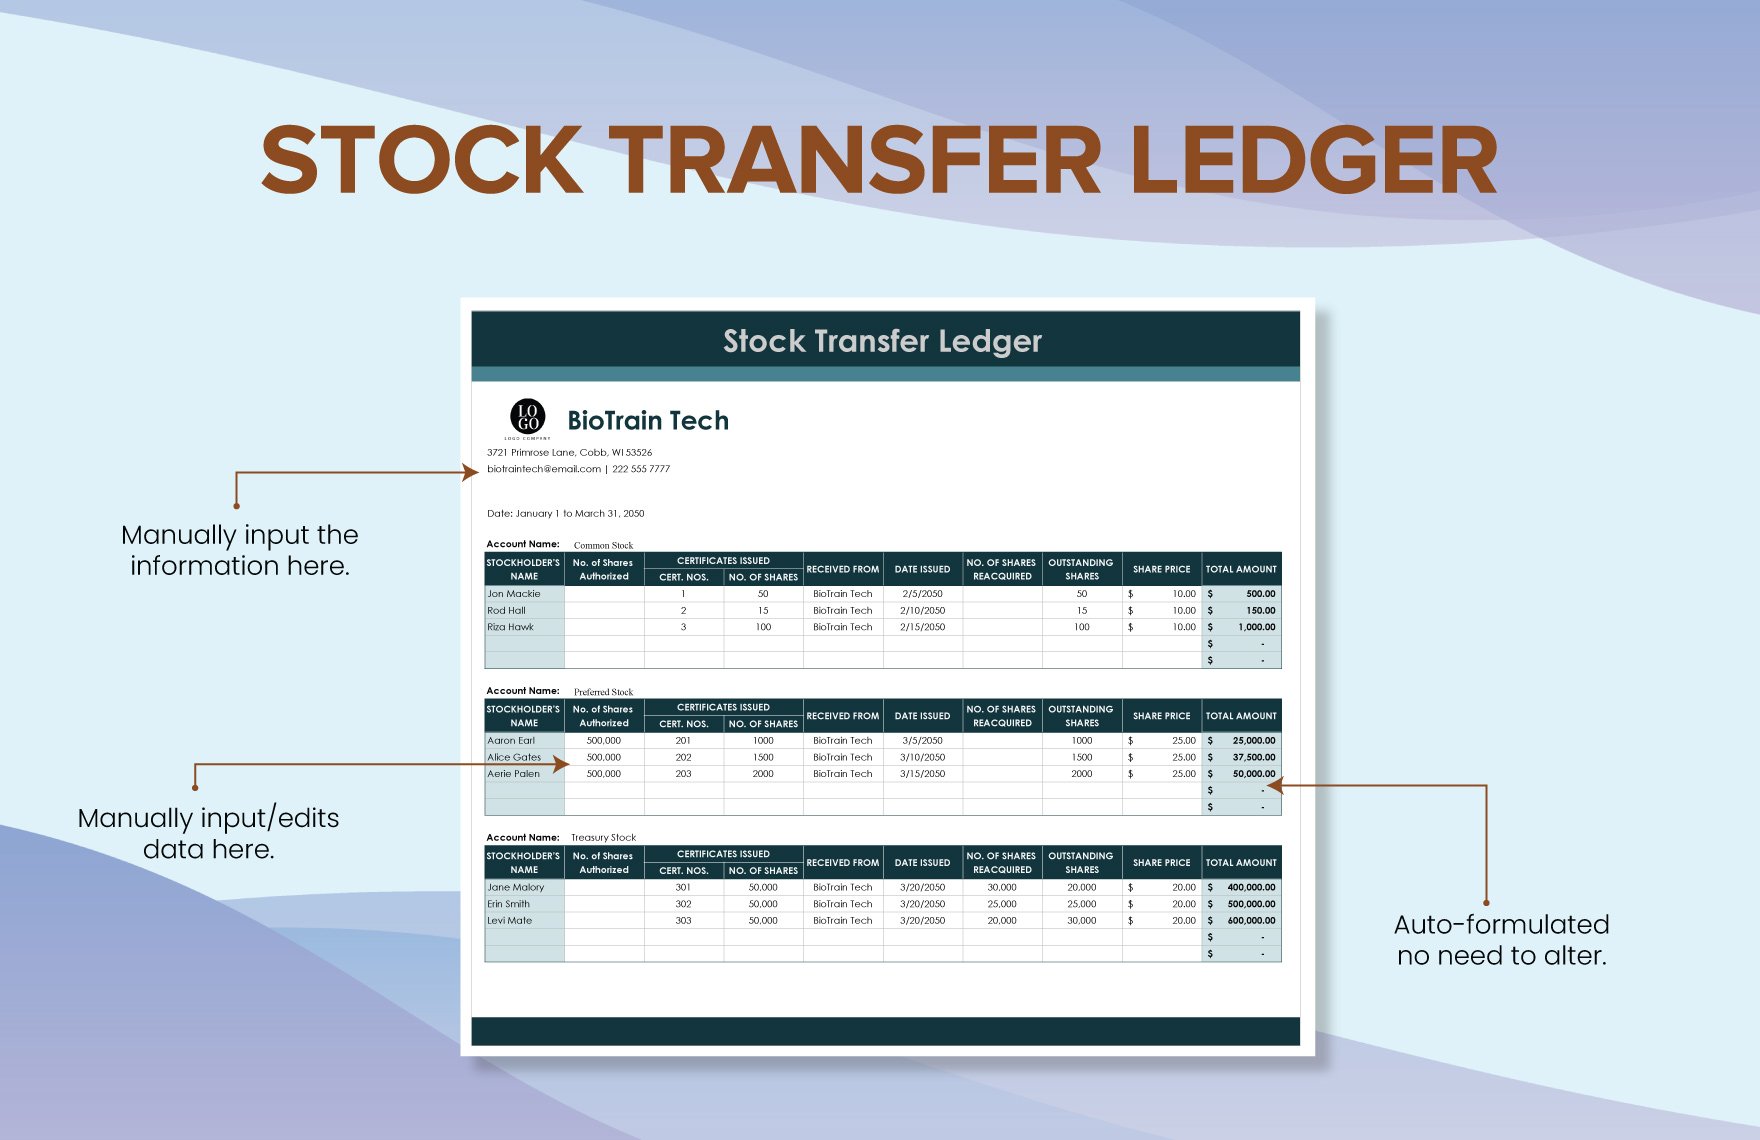 Stock Transfer Ledger Template